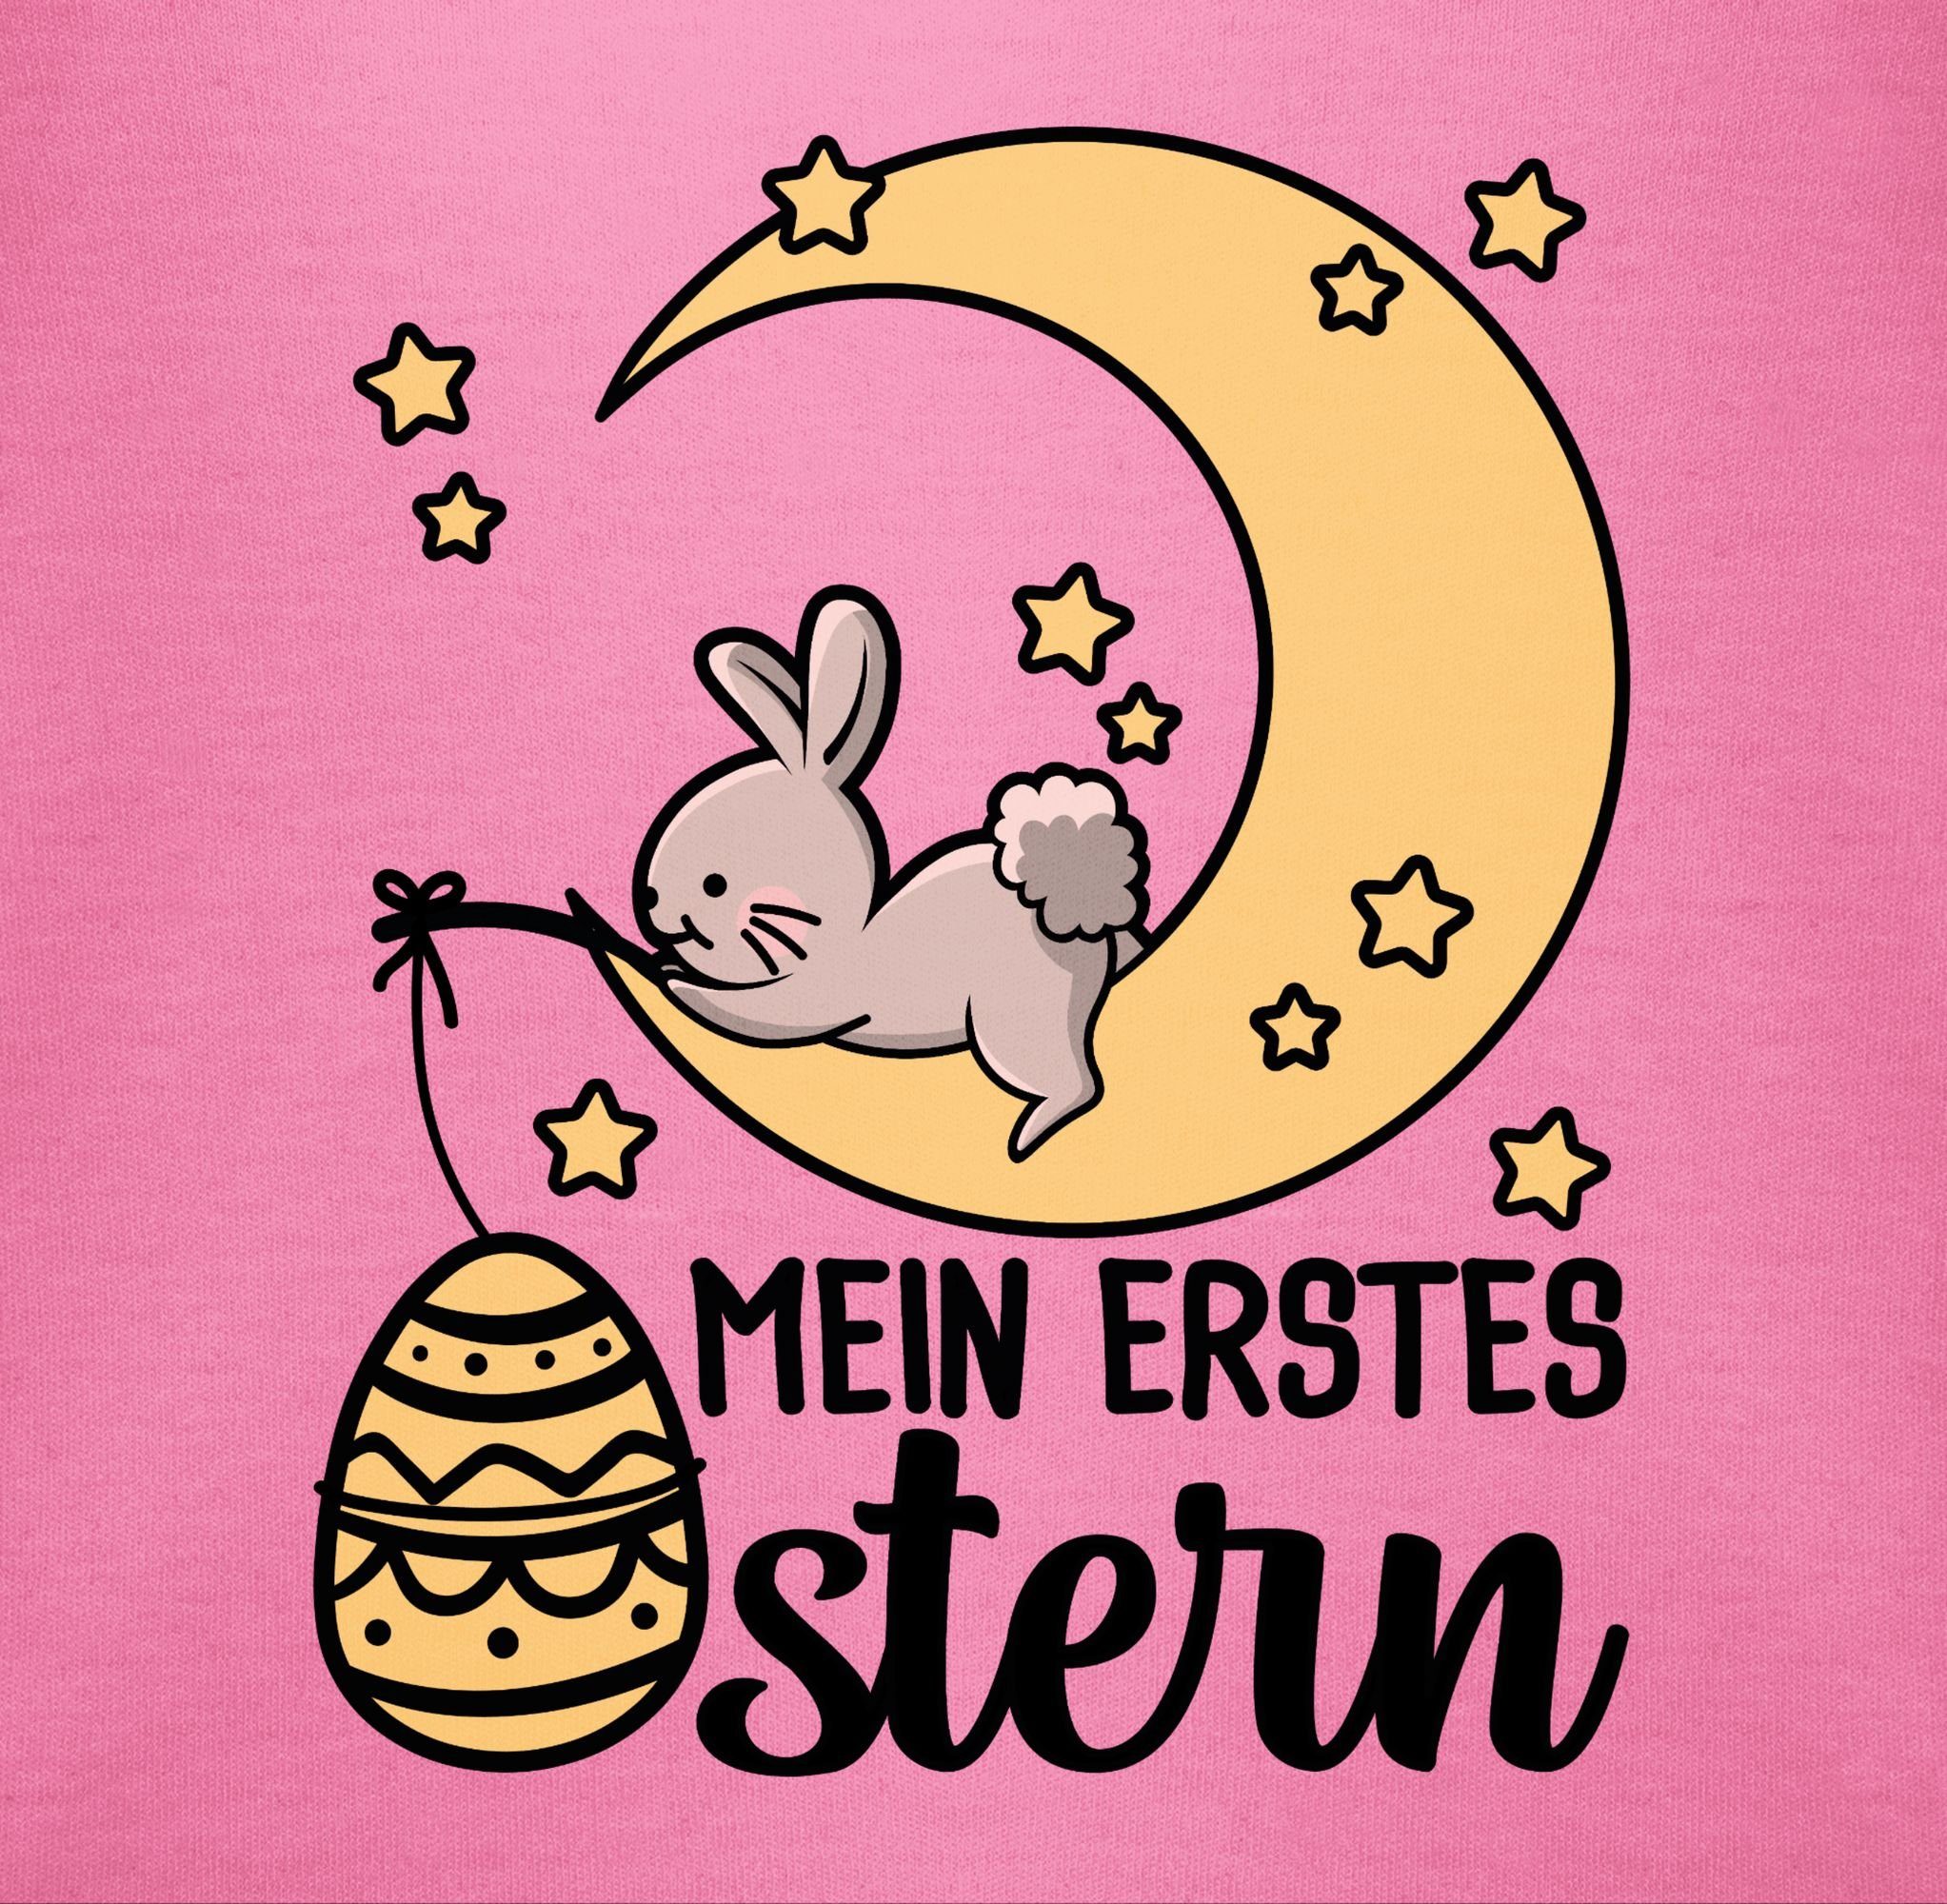 Shirtbody Hase Ostergeschenke Pink Ostern Mein mit Shirtracer erstes 1